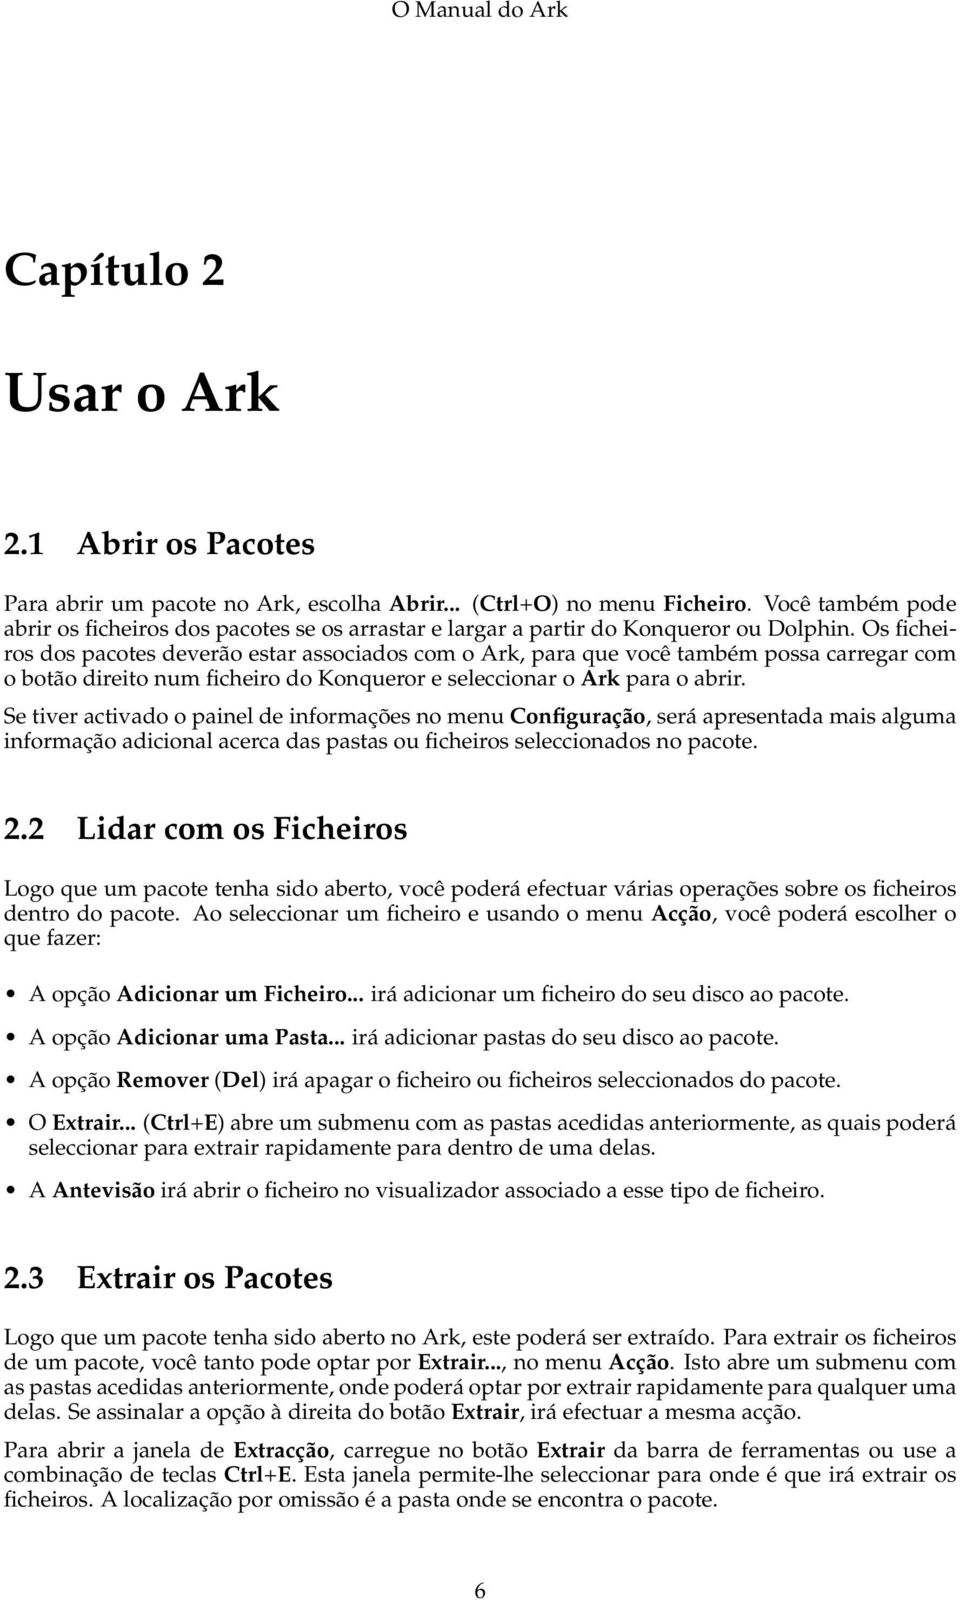 Os ficheiros dos pacotes deverão estar associados com o Ark, para que você também possa carregar com o botão direito num ficheiro do Konqueror e seleccionar o Ark para o abrir.